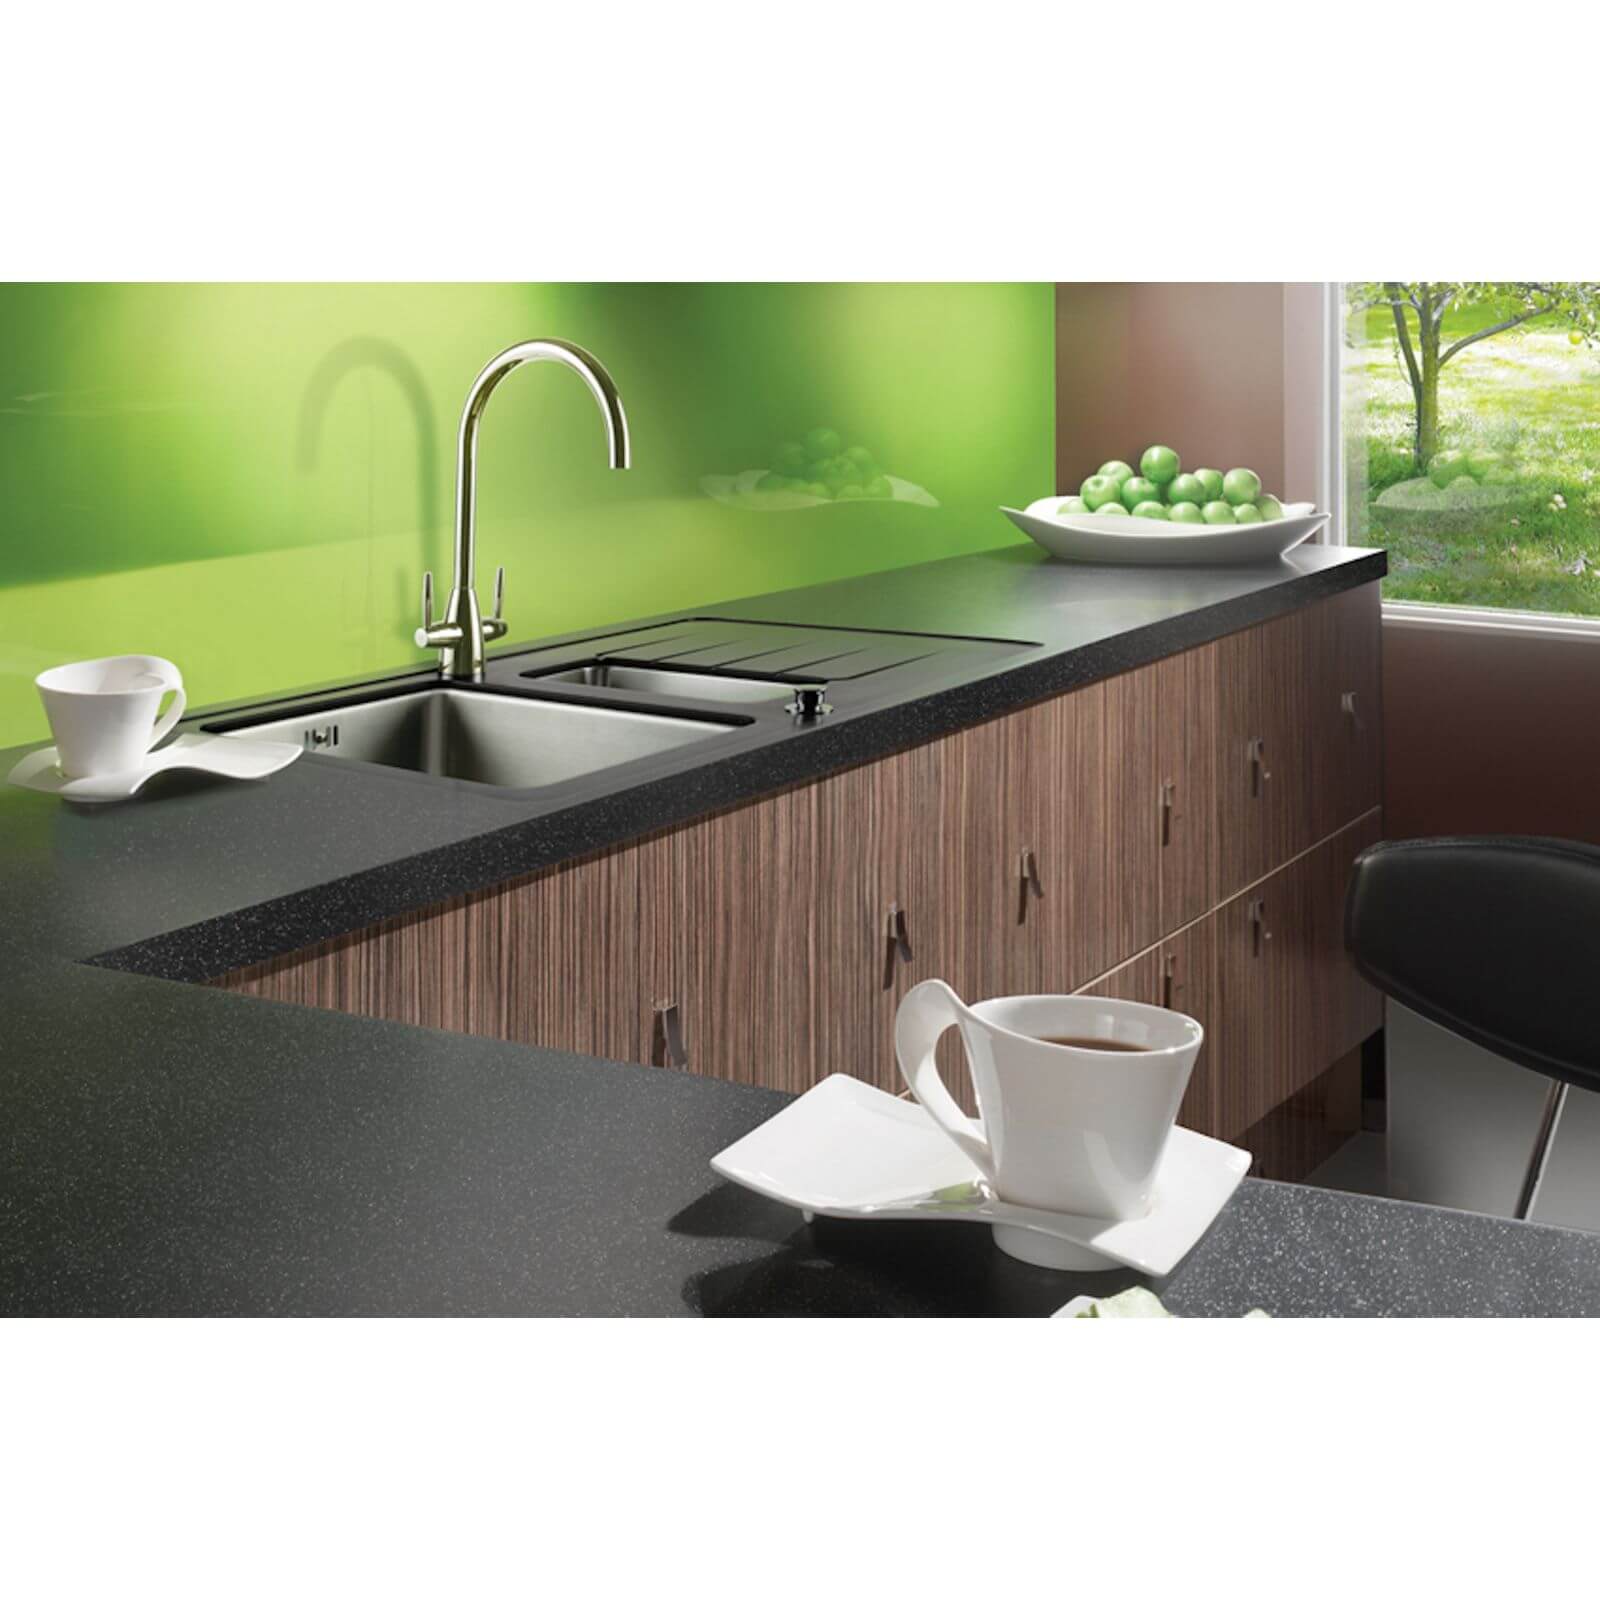 Maia Galaxy Kitchen Worktop R95 - 60 x 60 x 2.8cm